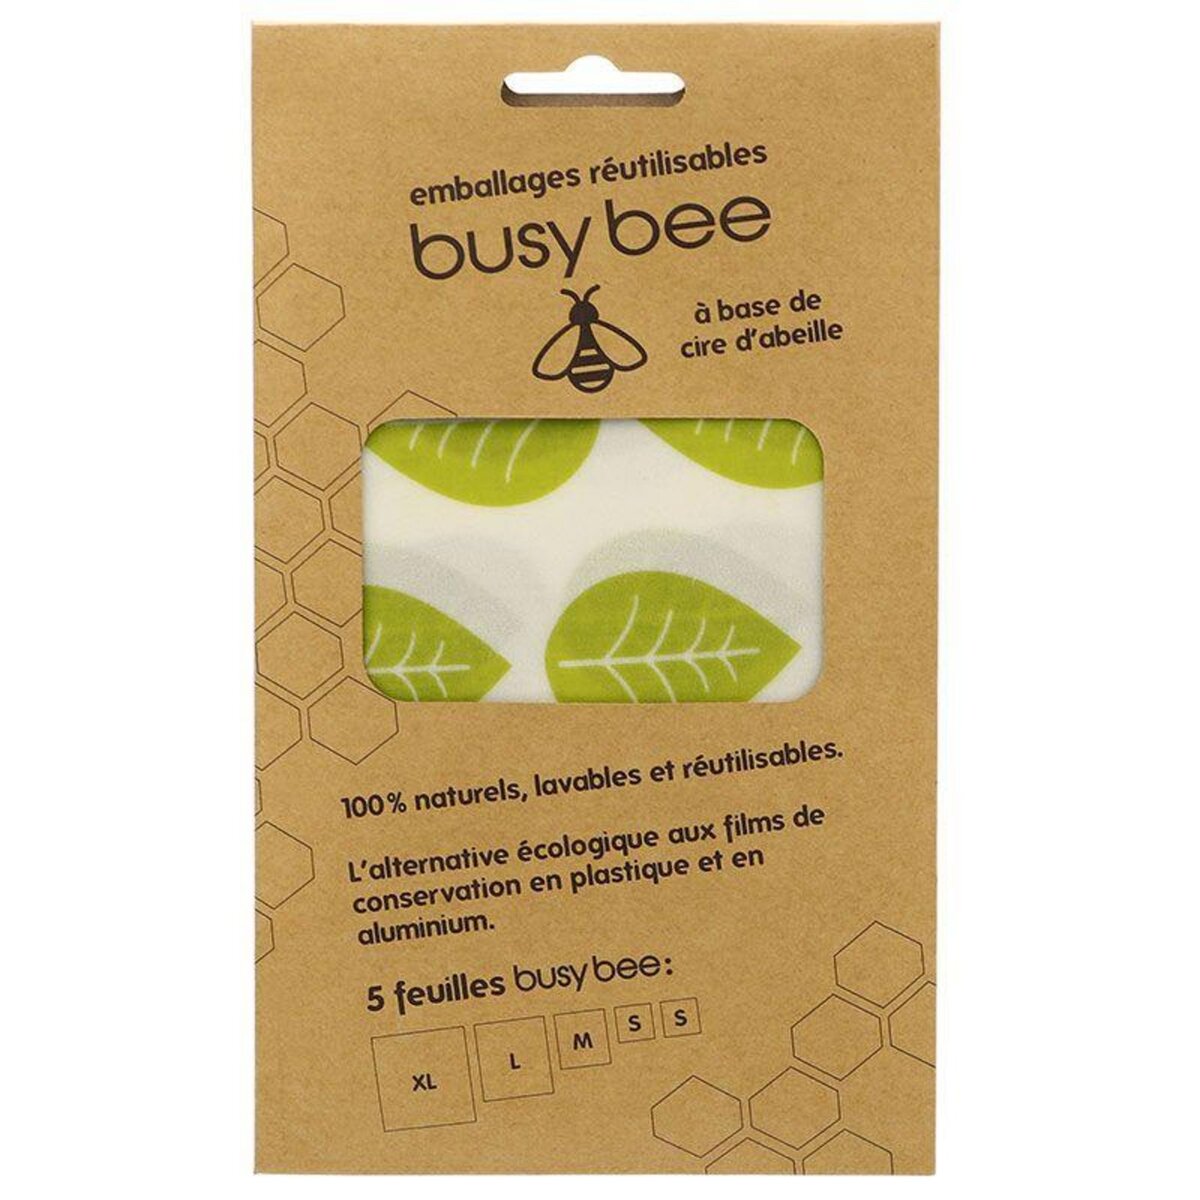 Chevalier Diffusion Emballage alimentaire réutilisable à la cire d'abeille 5 feuilles Busy Bee